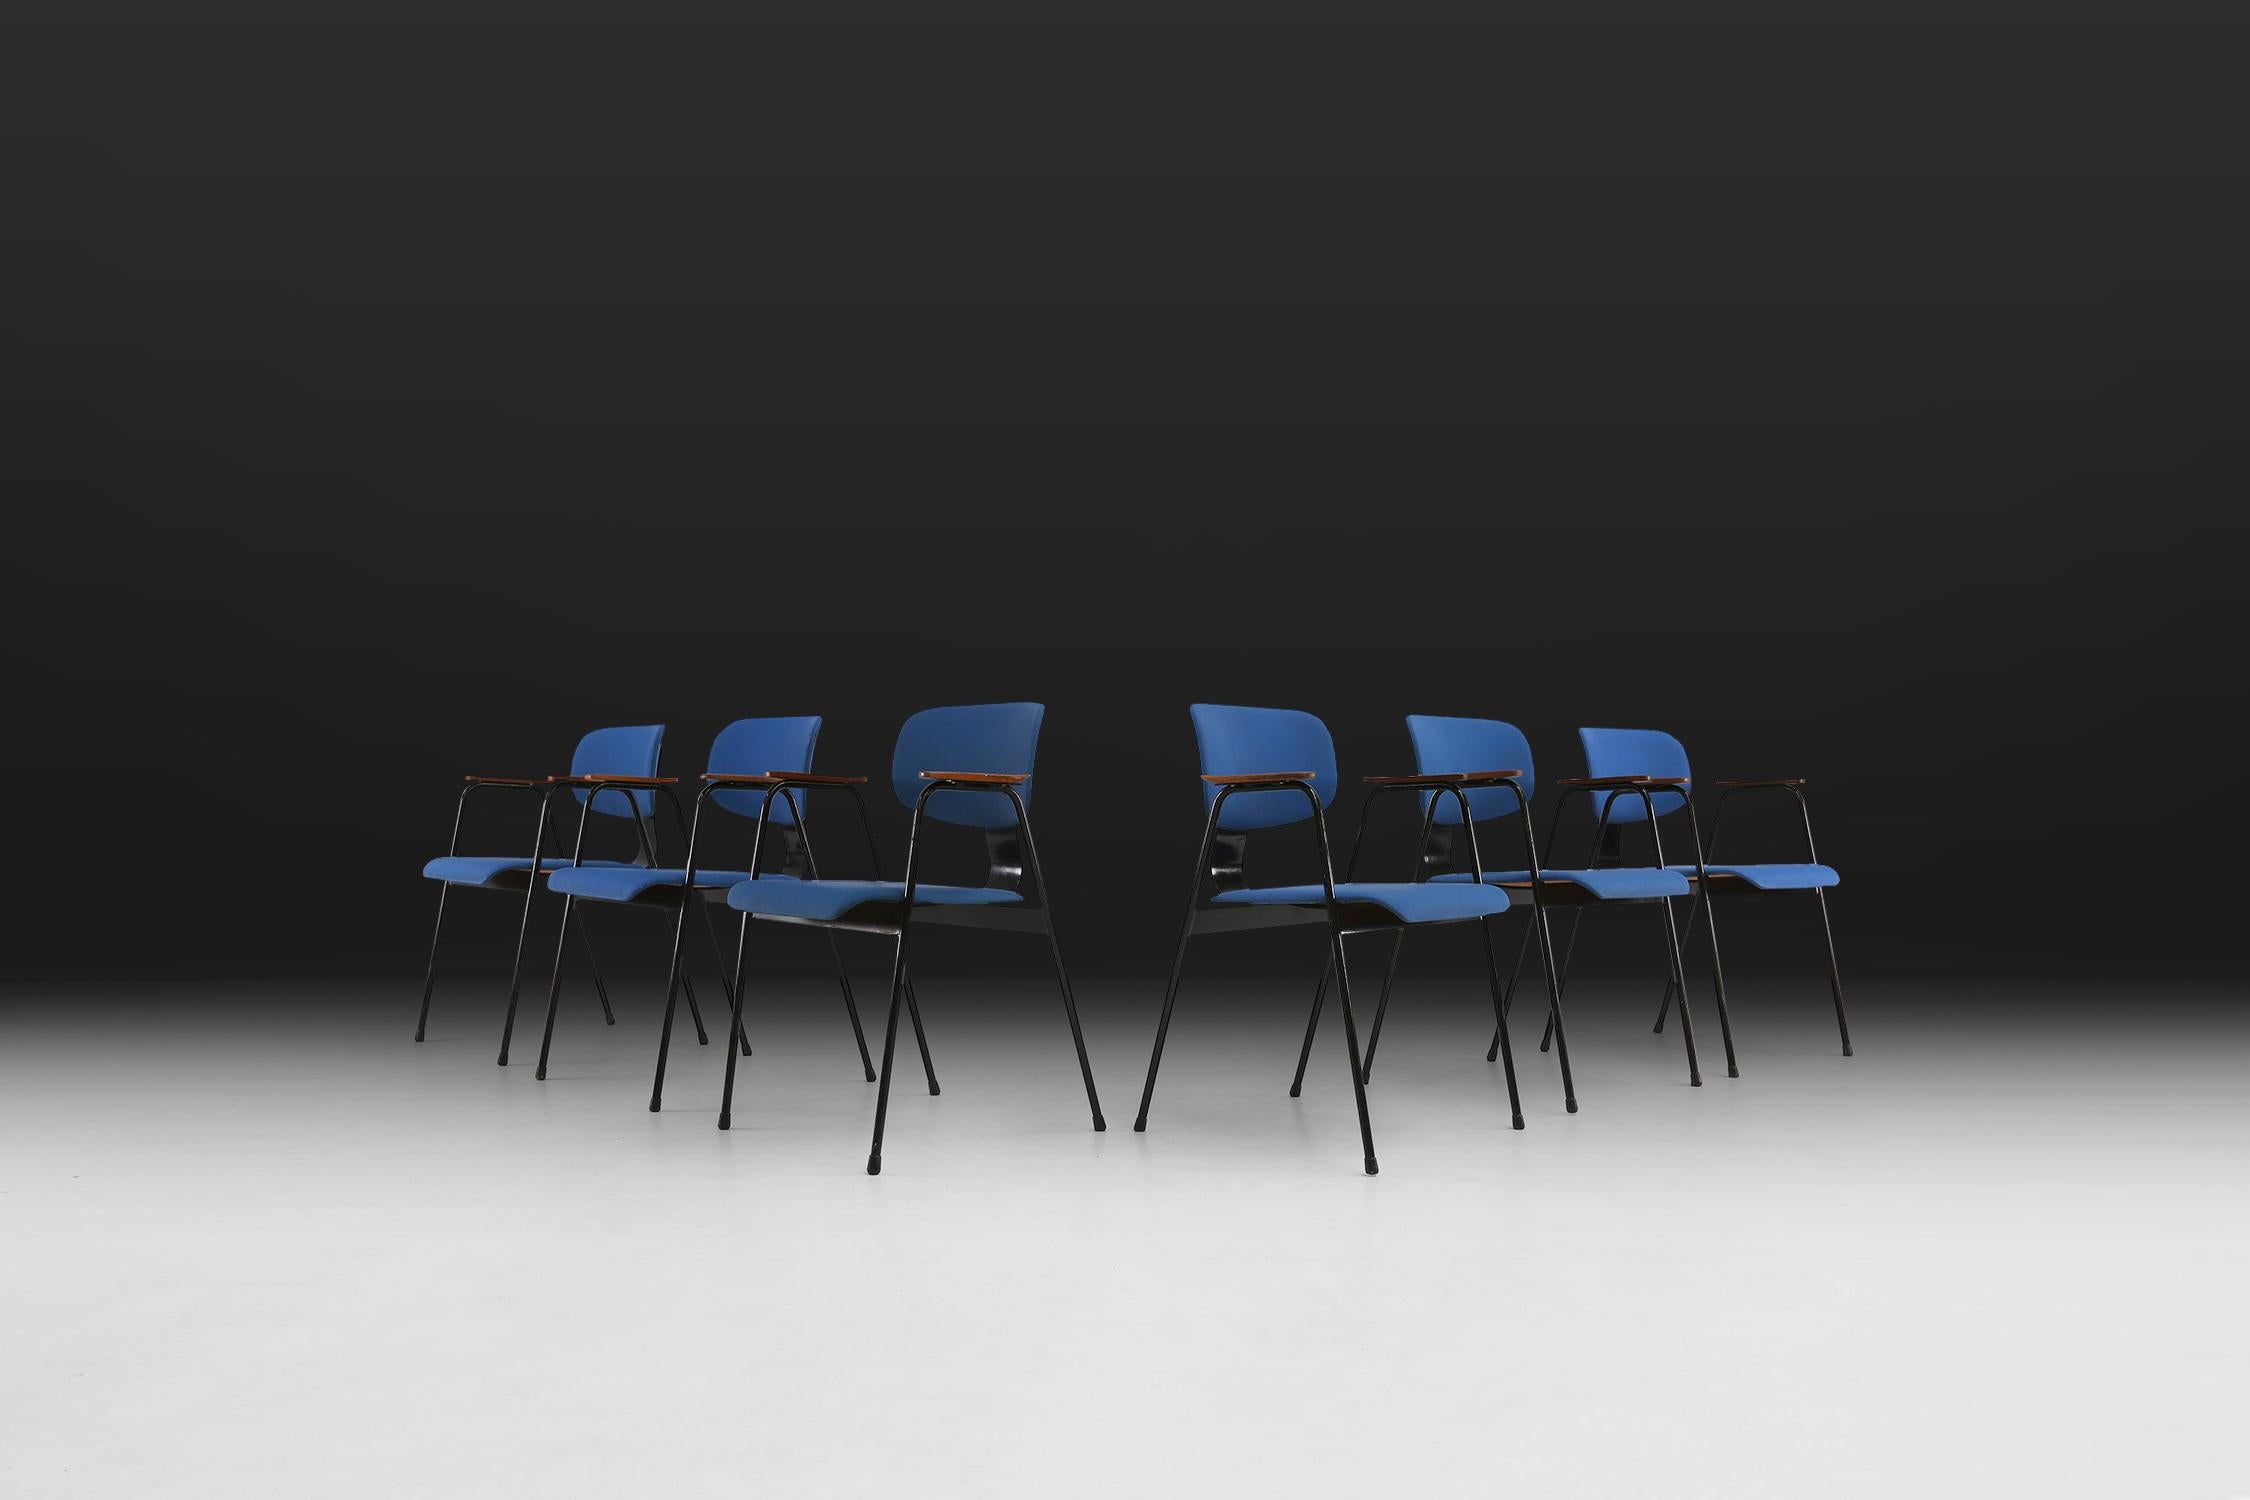 Sechs Stühle des Designers Willy Van Der Meeren für Tubax, ca. 1950.
Der Stuhl hat einen schwarz lackierten Metallrahmen und einen blauen Vinylsitz.
Die Armlehnen sind aus Holz gefertigt.

Van Der Meeren gilt als einer der wichtigsten belgischen